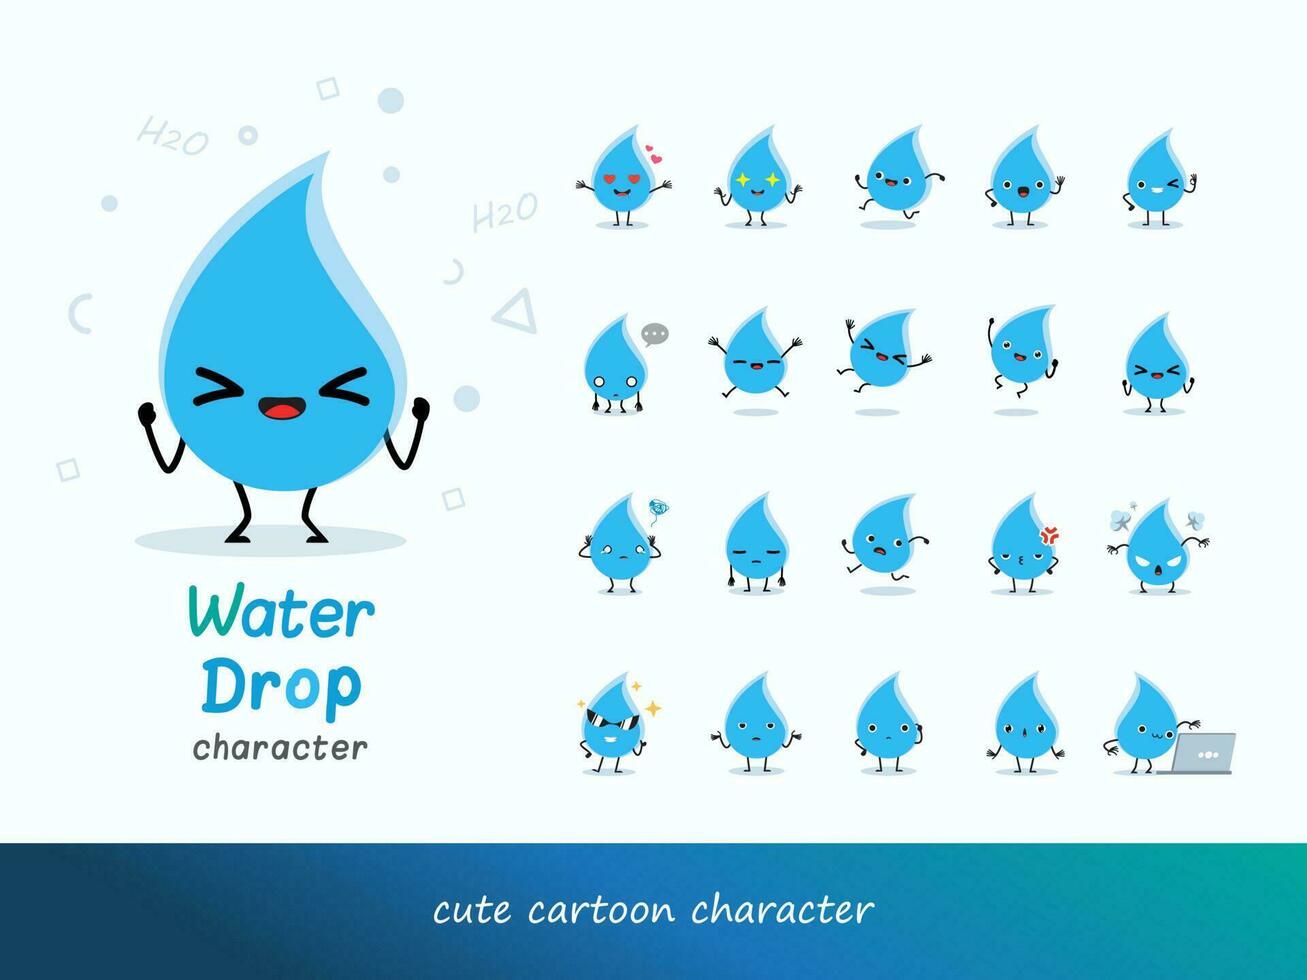 international l'eau jour, l'eau laissez tomber personnage ensemble dessin animé images l'eau laissez tomber illustration vecteur